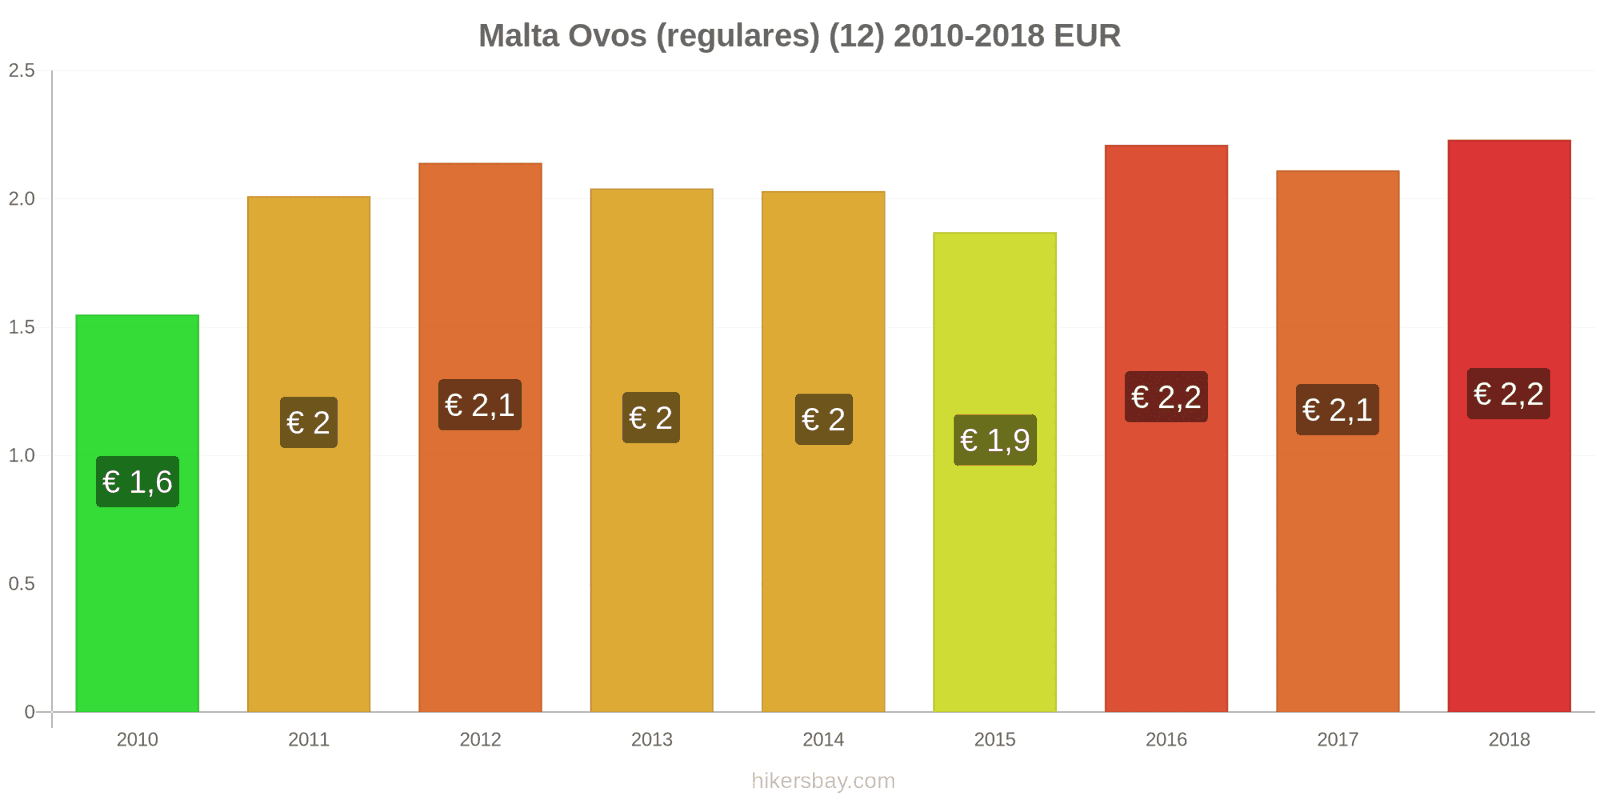 Malta mudanças de preços Ovos (normais) (12 unidades) hikersbay.com